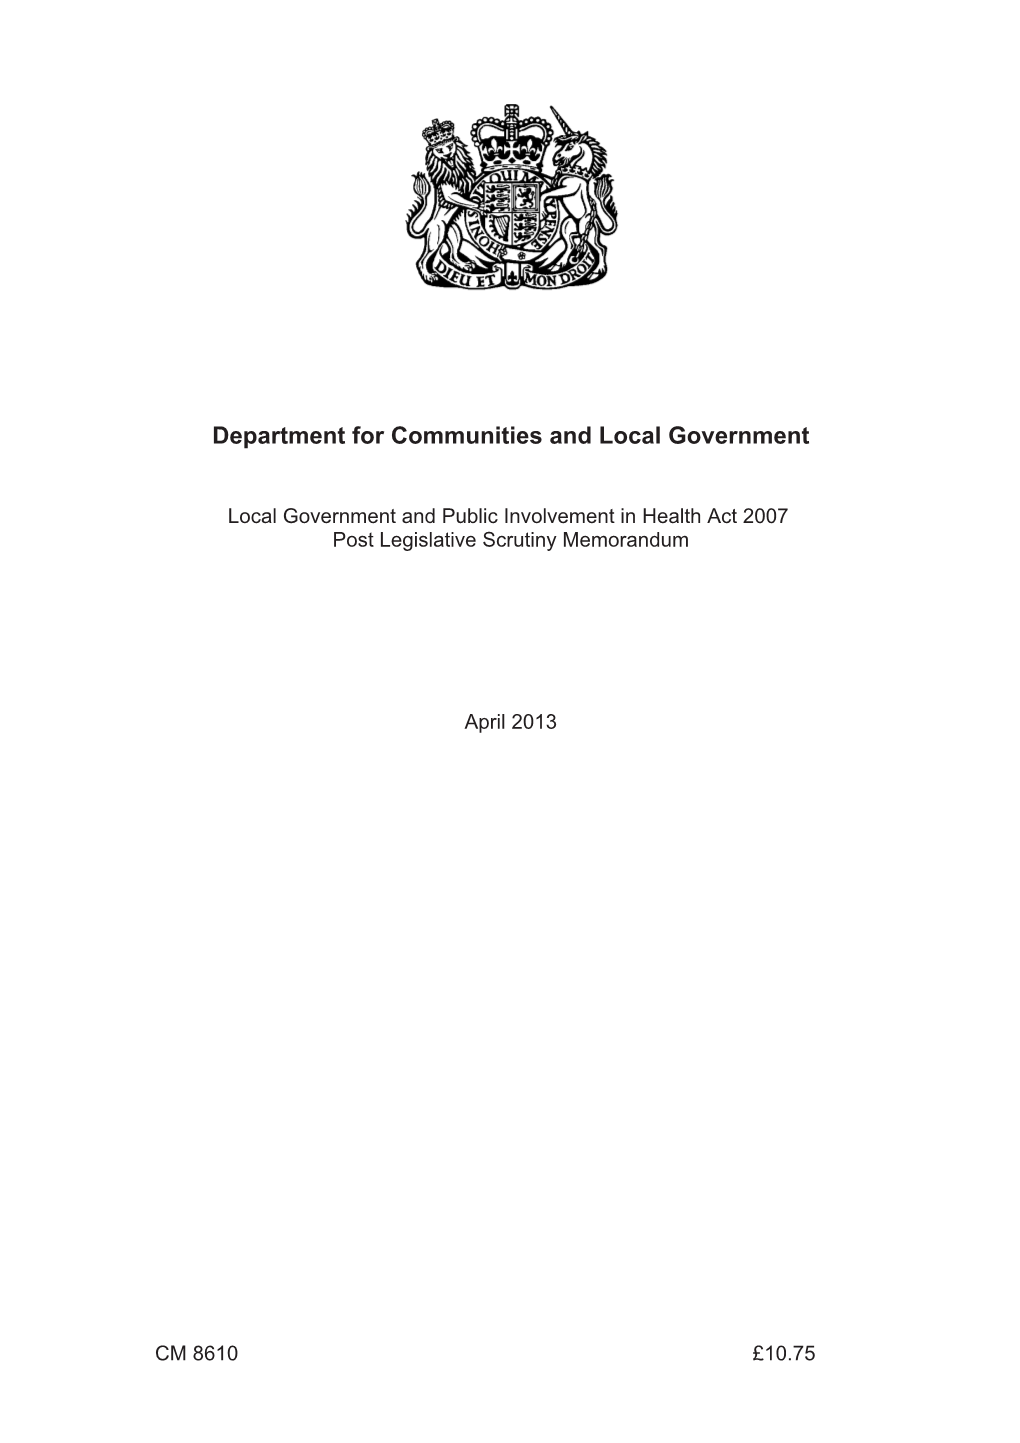 Local Government and Public Involvement in Health Act 2007 Post Legislative Scrutiny Memorandum